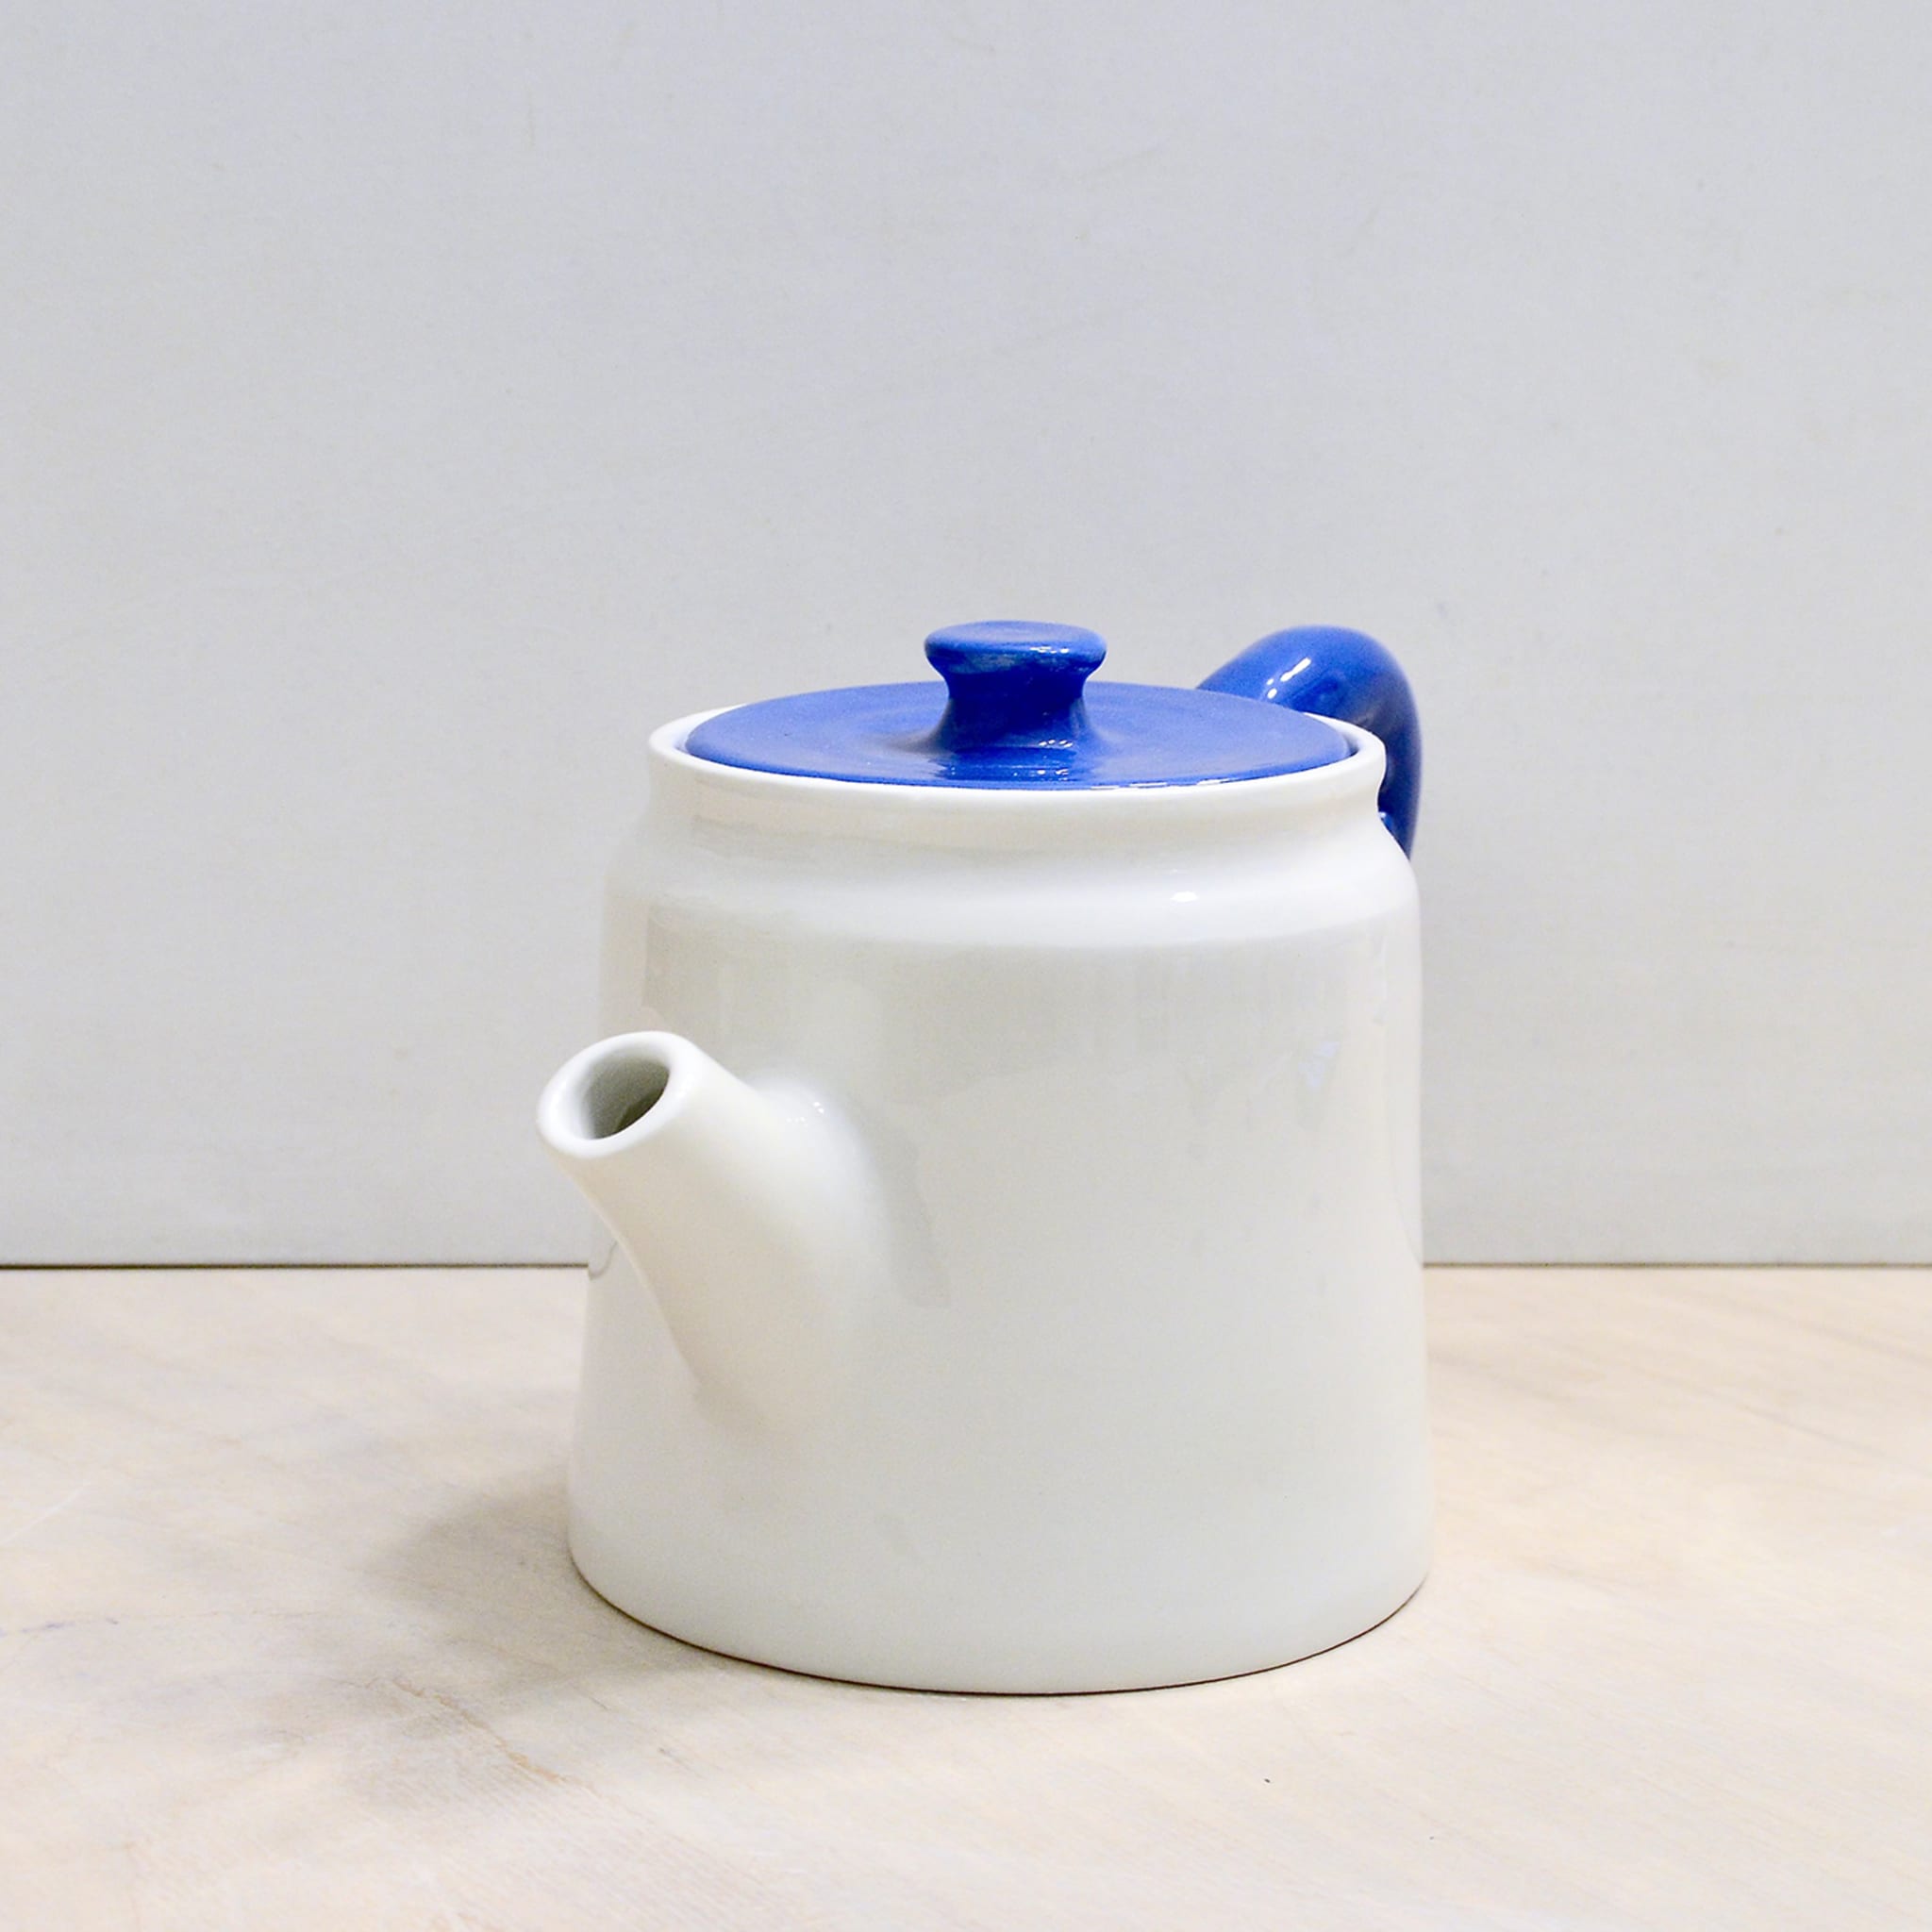 Polpo Blue&White Teapot - Alternative view 1